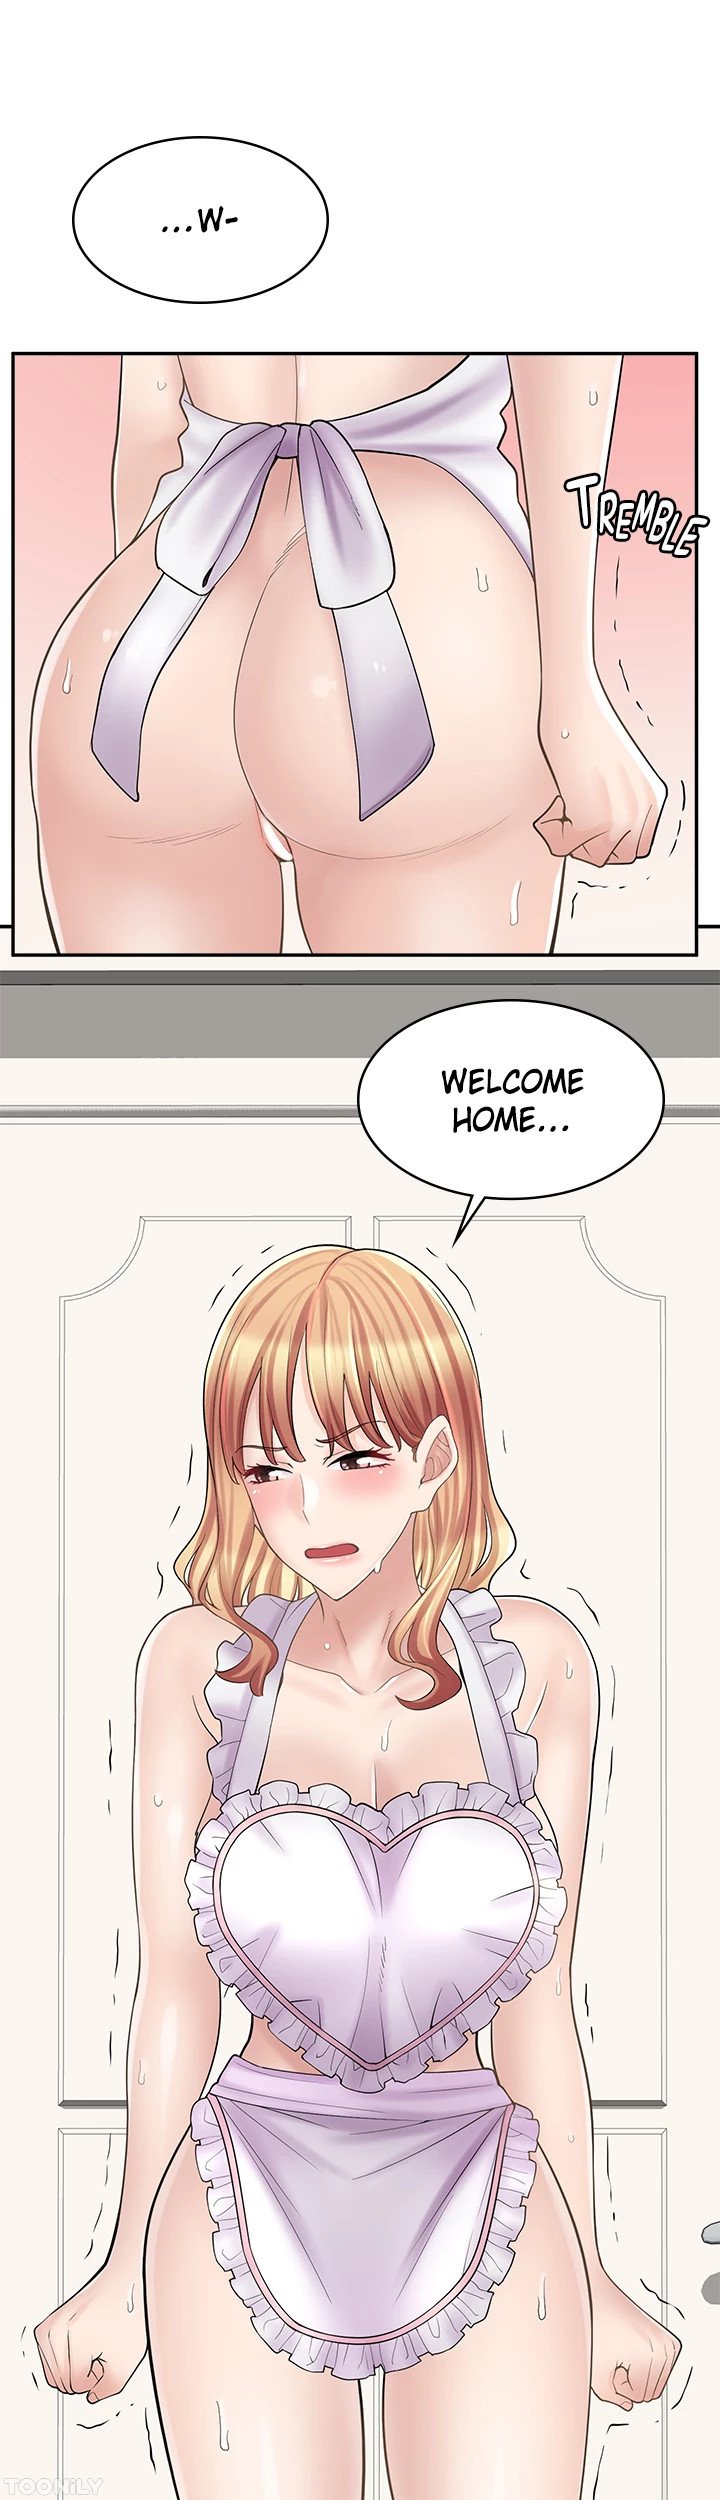 erotic-manga-cafe-girls-chap-19-1